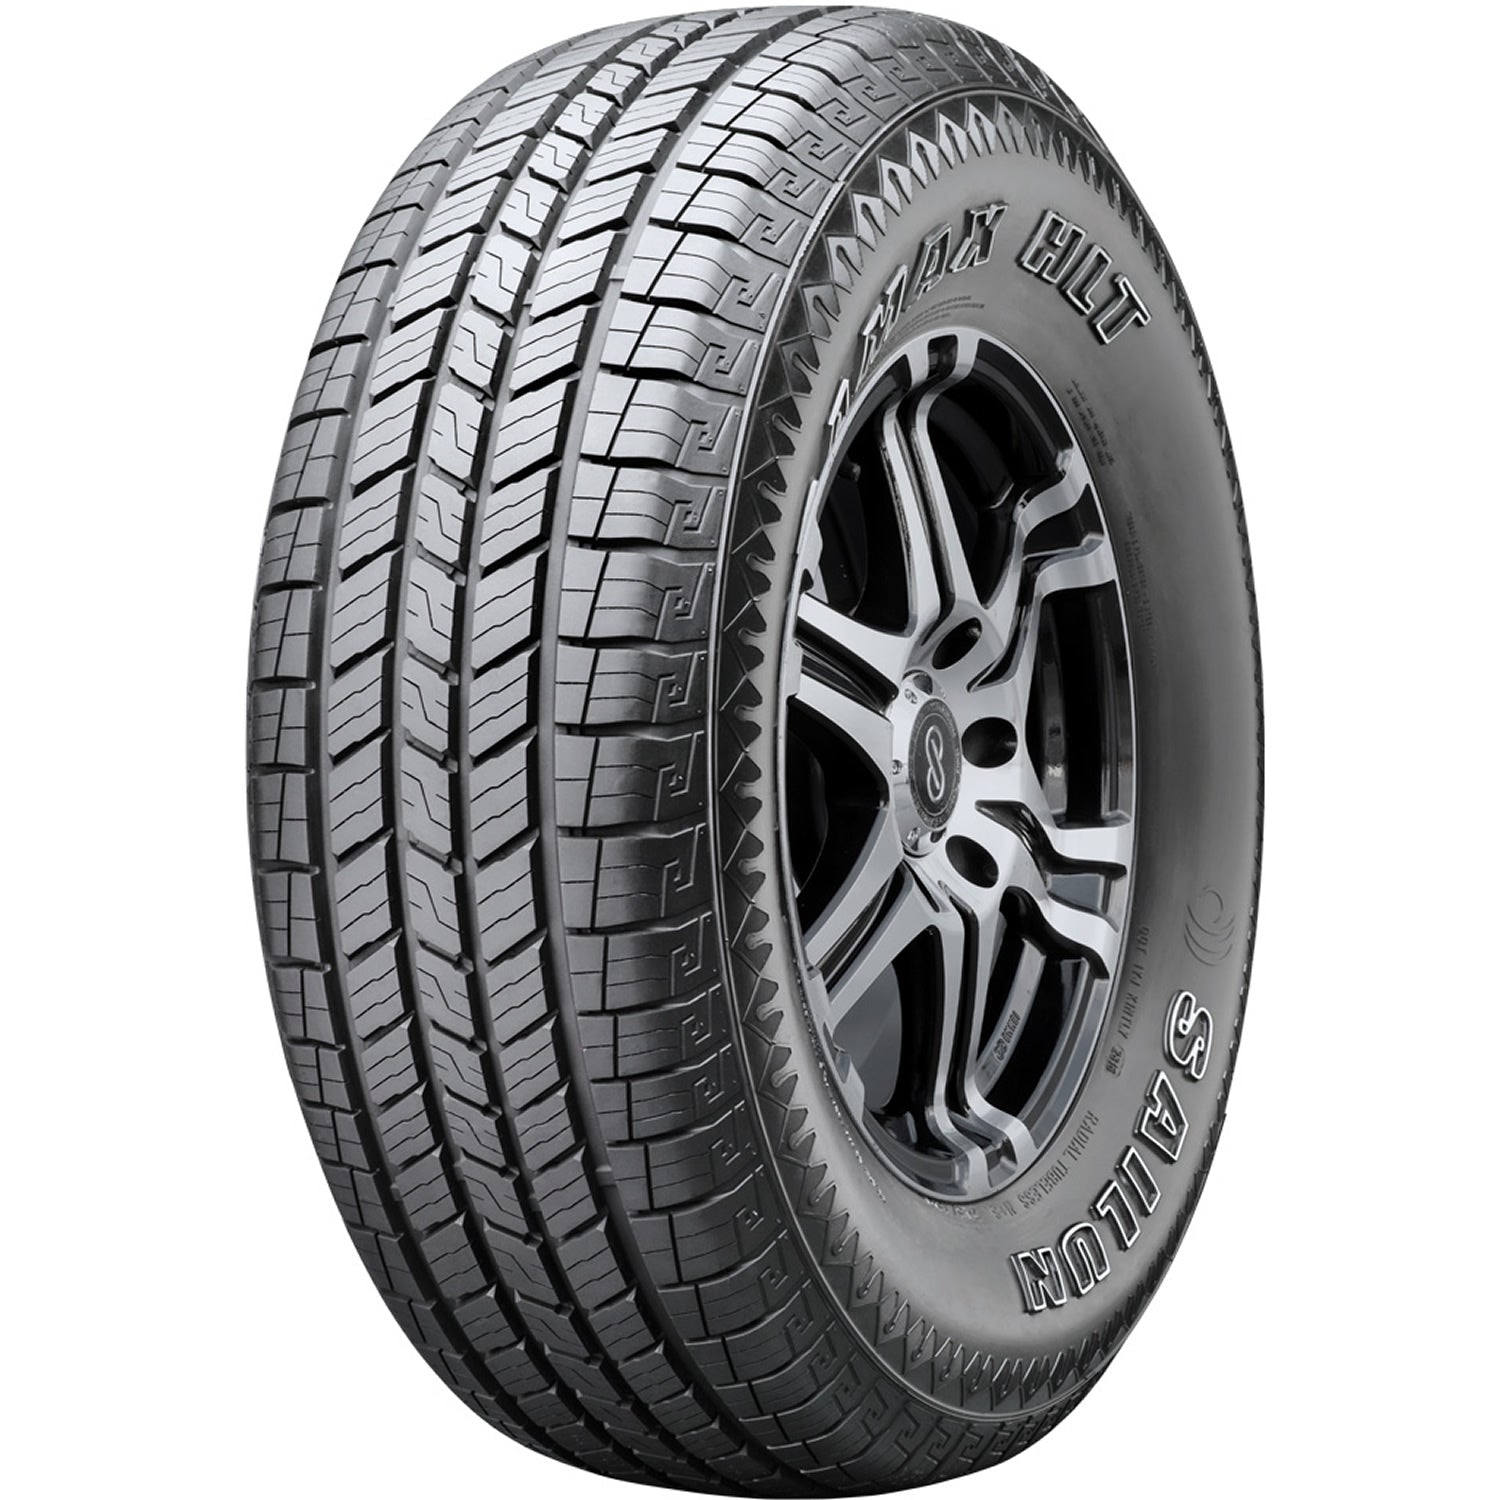 SAILUN TERRAMAX HLT 255/70R16 (30.1X10.2R 16) Tires